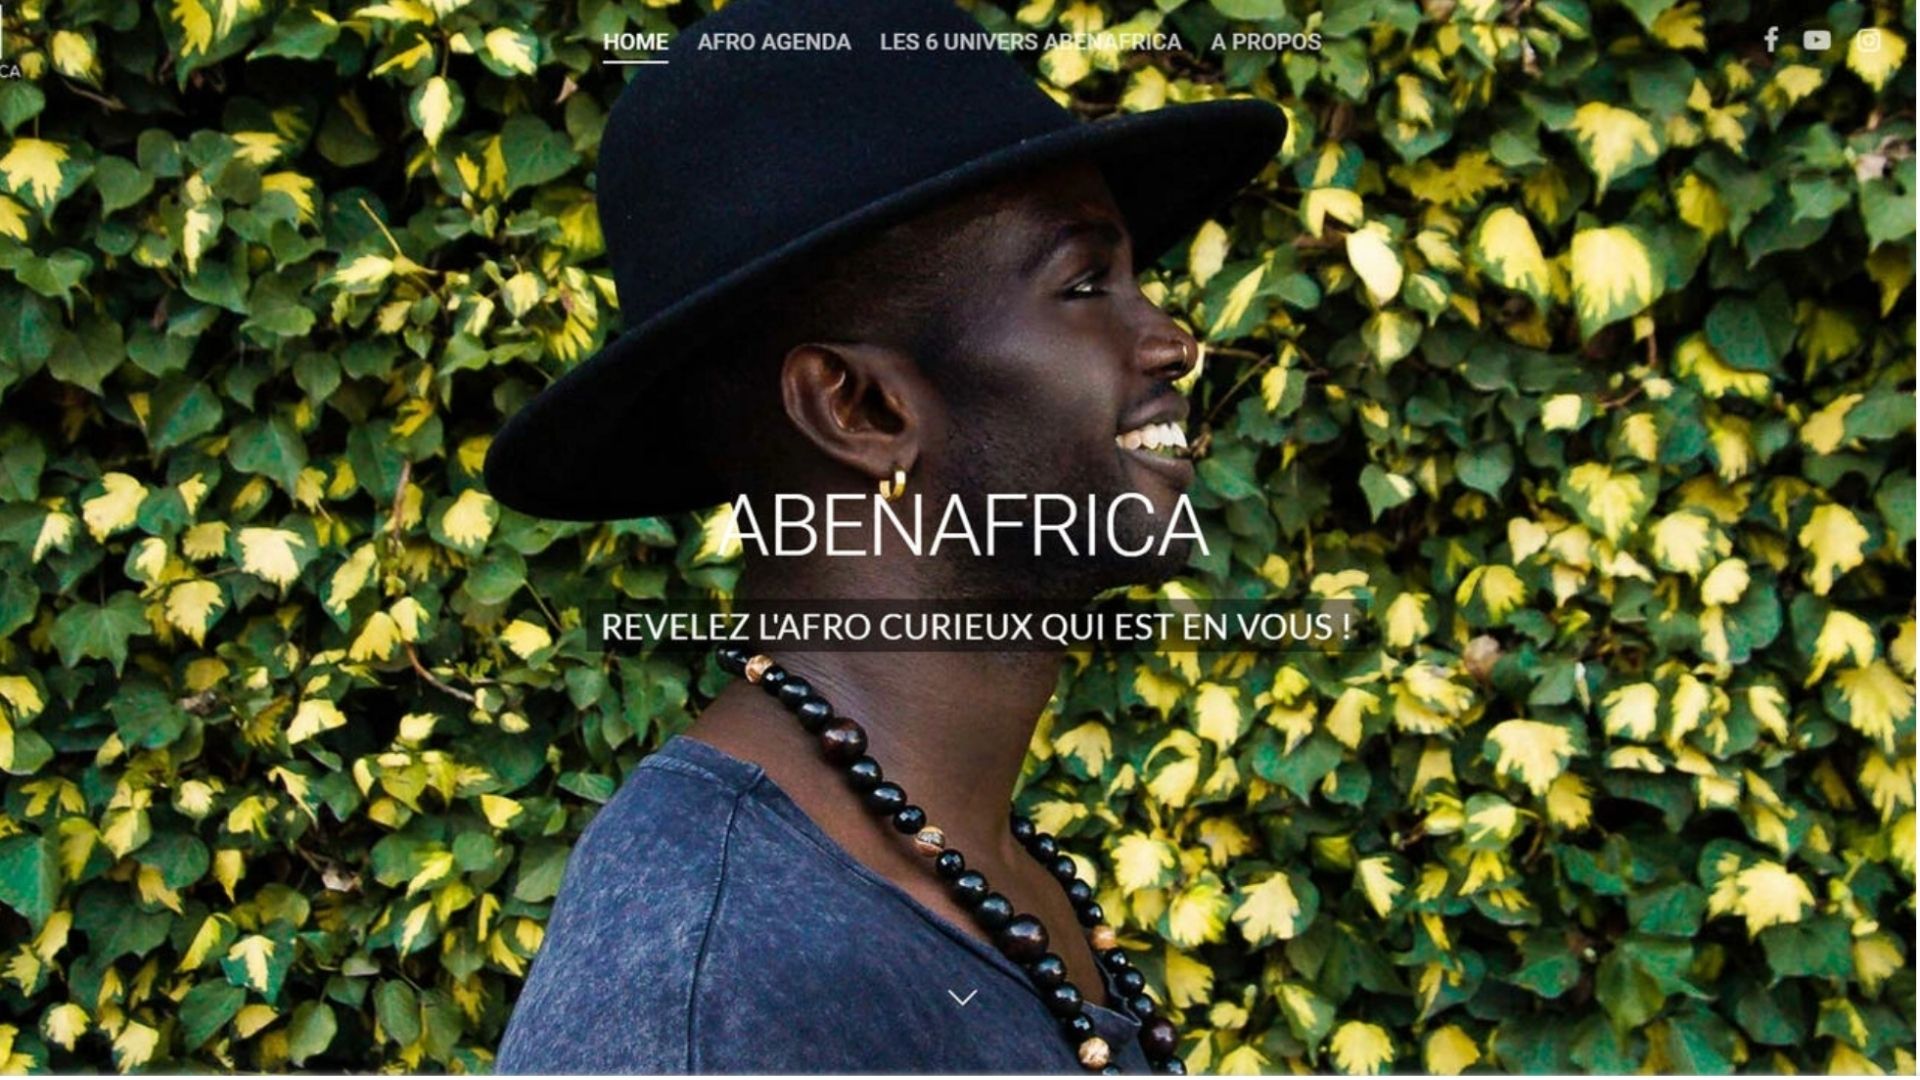 Vivre ailleurs, sur RFI : Le site abenafrica.com pour la promotion de l'Afro World